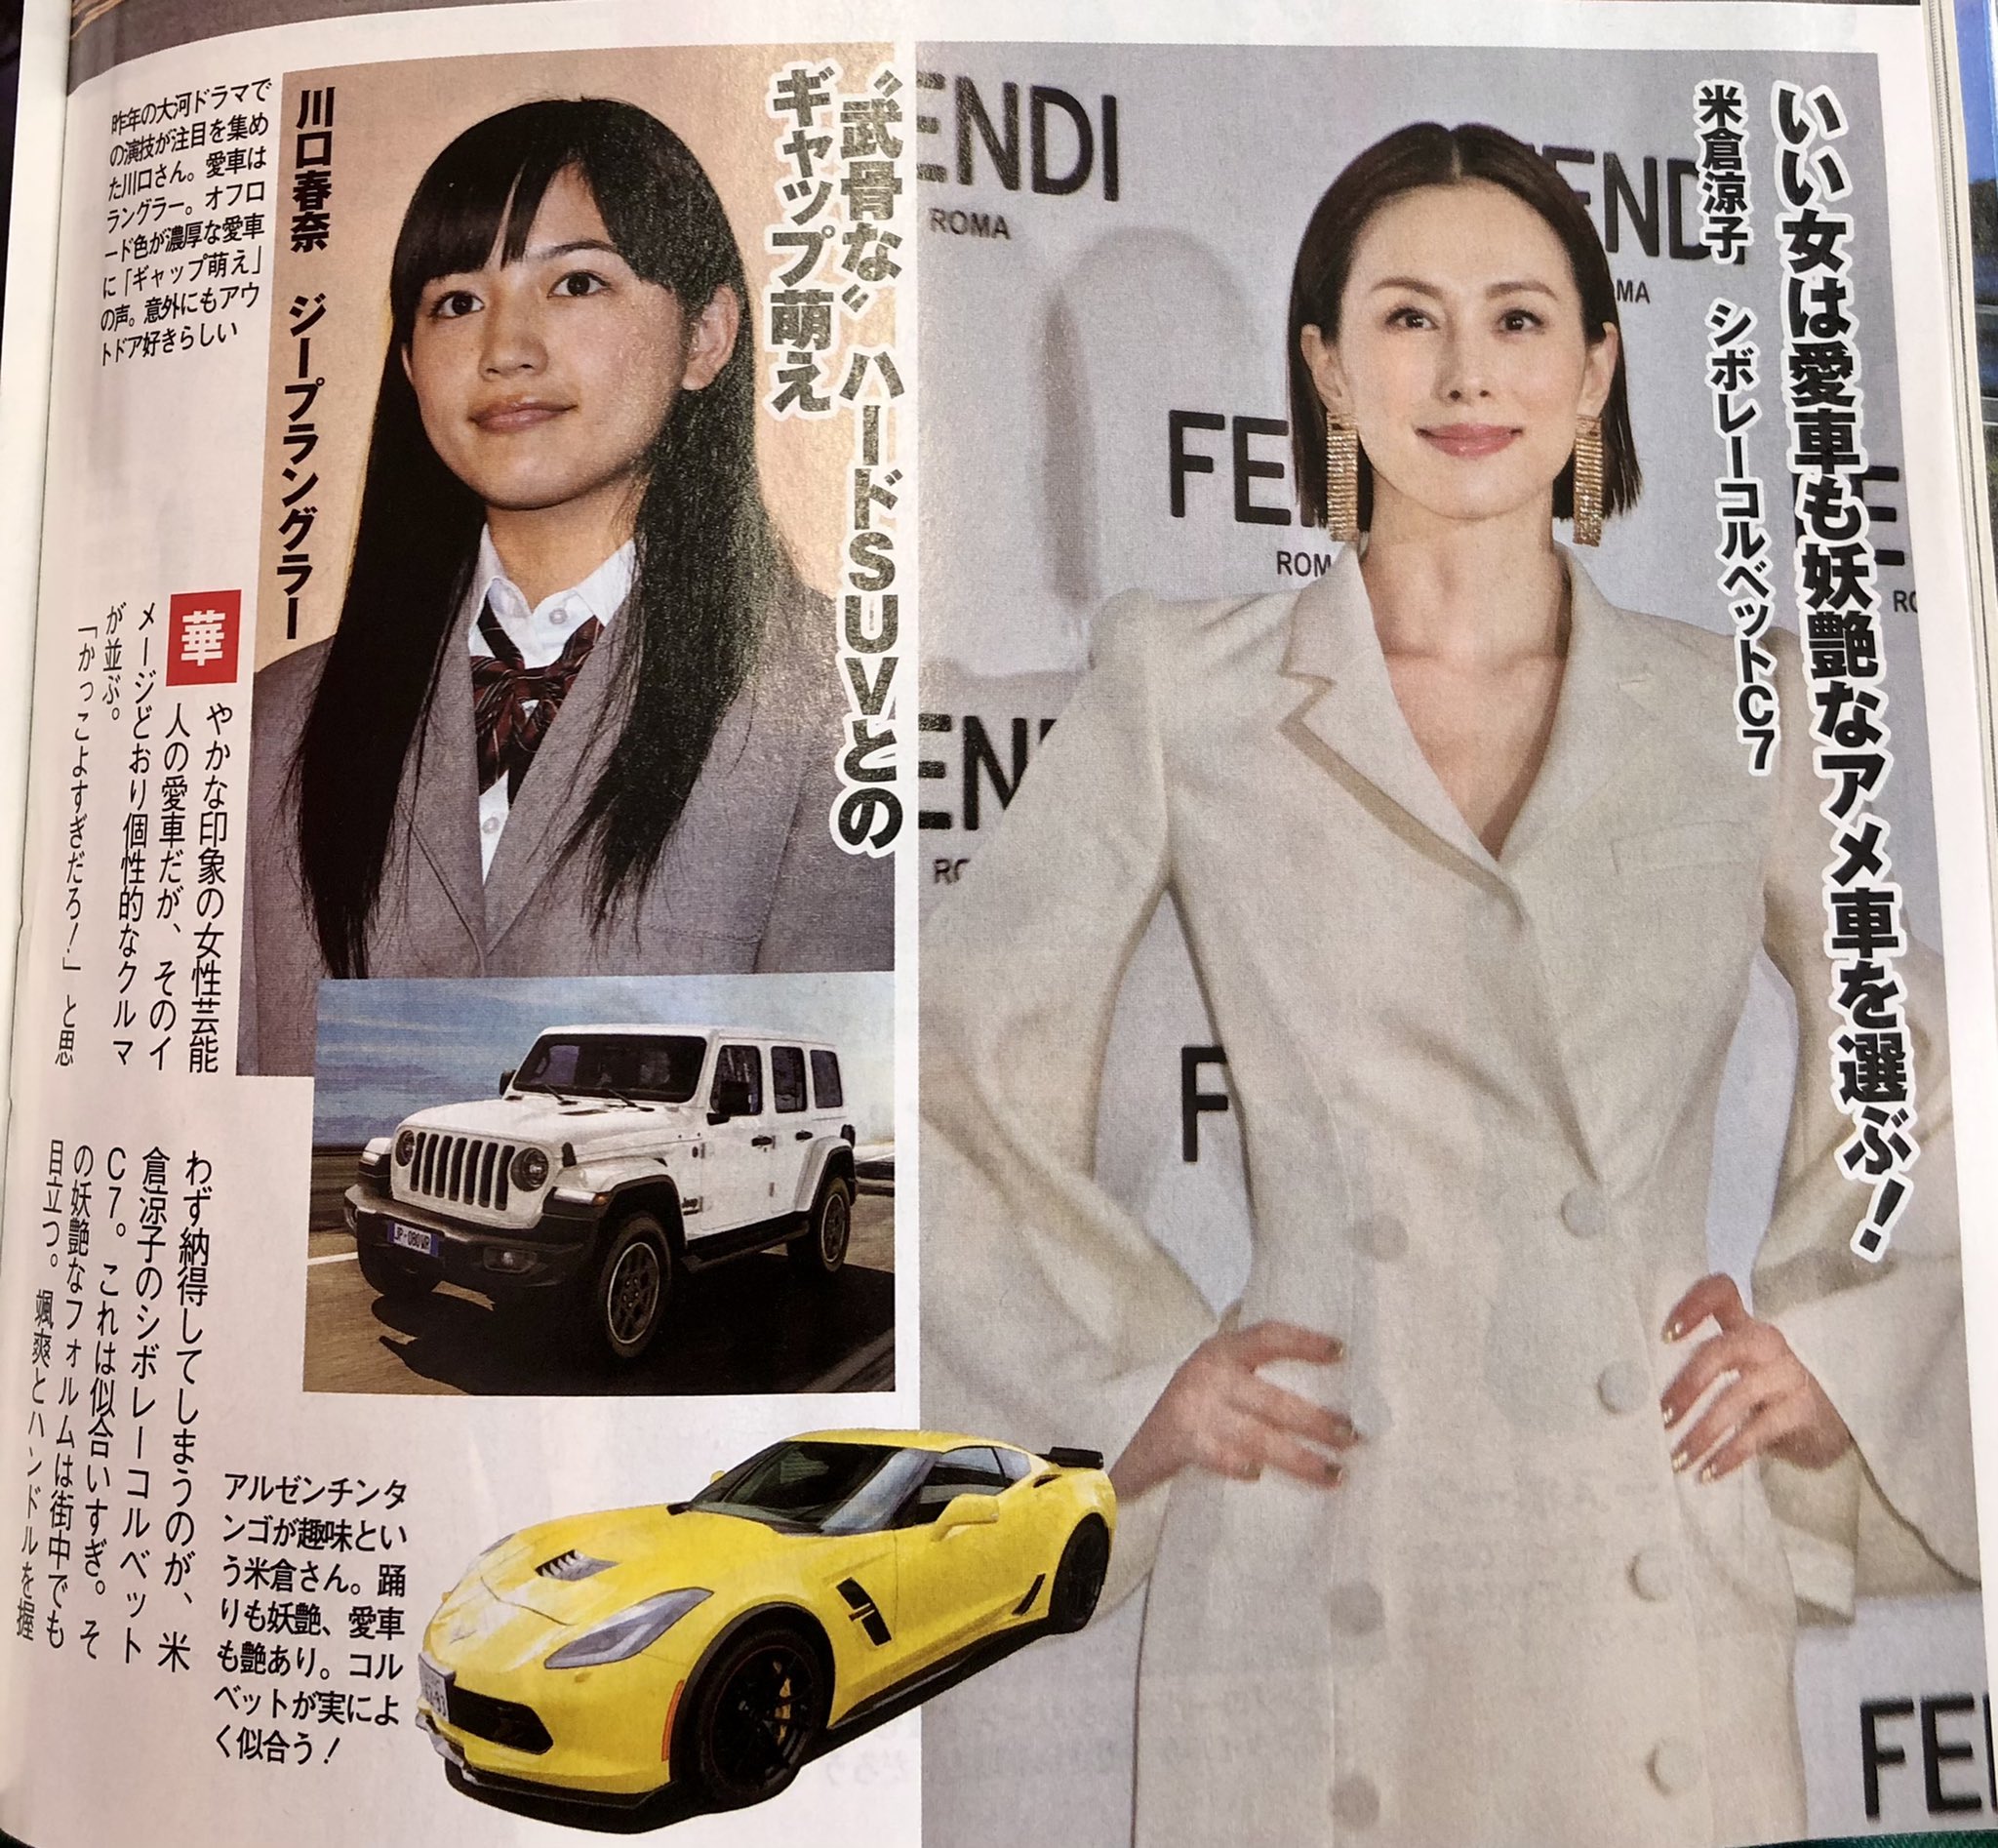 松田次生 Tsugio Matsuda ベストカーの記事で 有名人の愛車紹介が 米倉涼子さんが シボレーコルベットc7に乗ってる またマニアックな車に乗ってますね 乗ってる所を見てみたい 女性のスポーツカー 格好いい T Co Ji5wz0qlvs Twitter